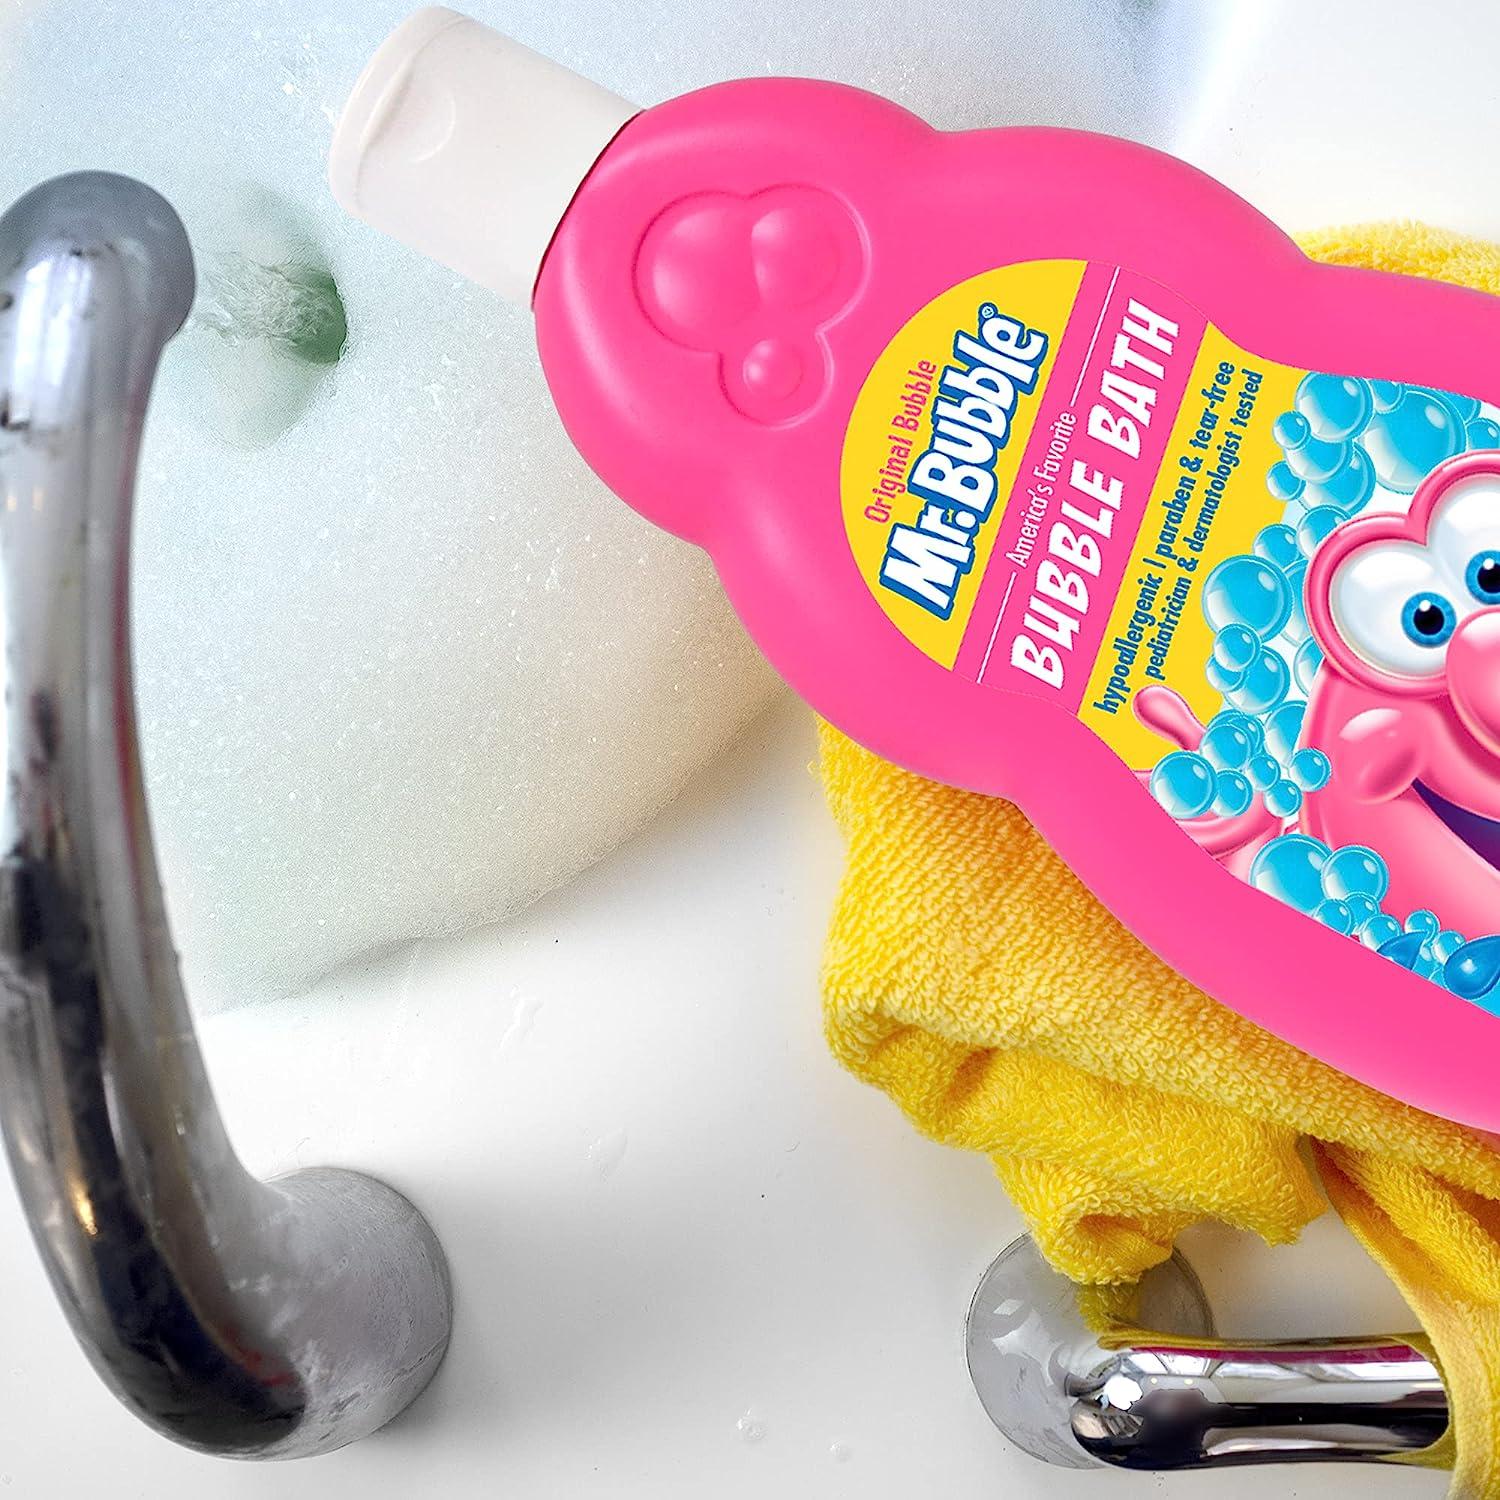 Mr. Bubble Original Foam Soap Original Bubble Gum Scent 8 Oz, 5-Pack 